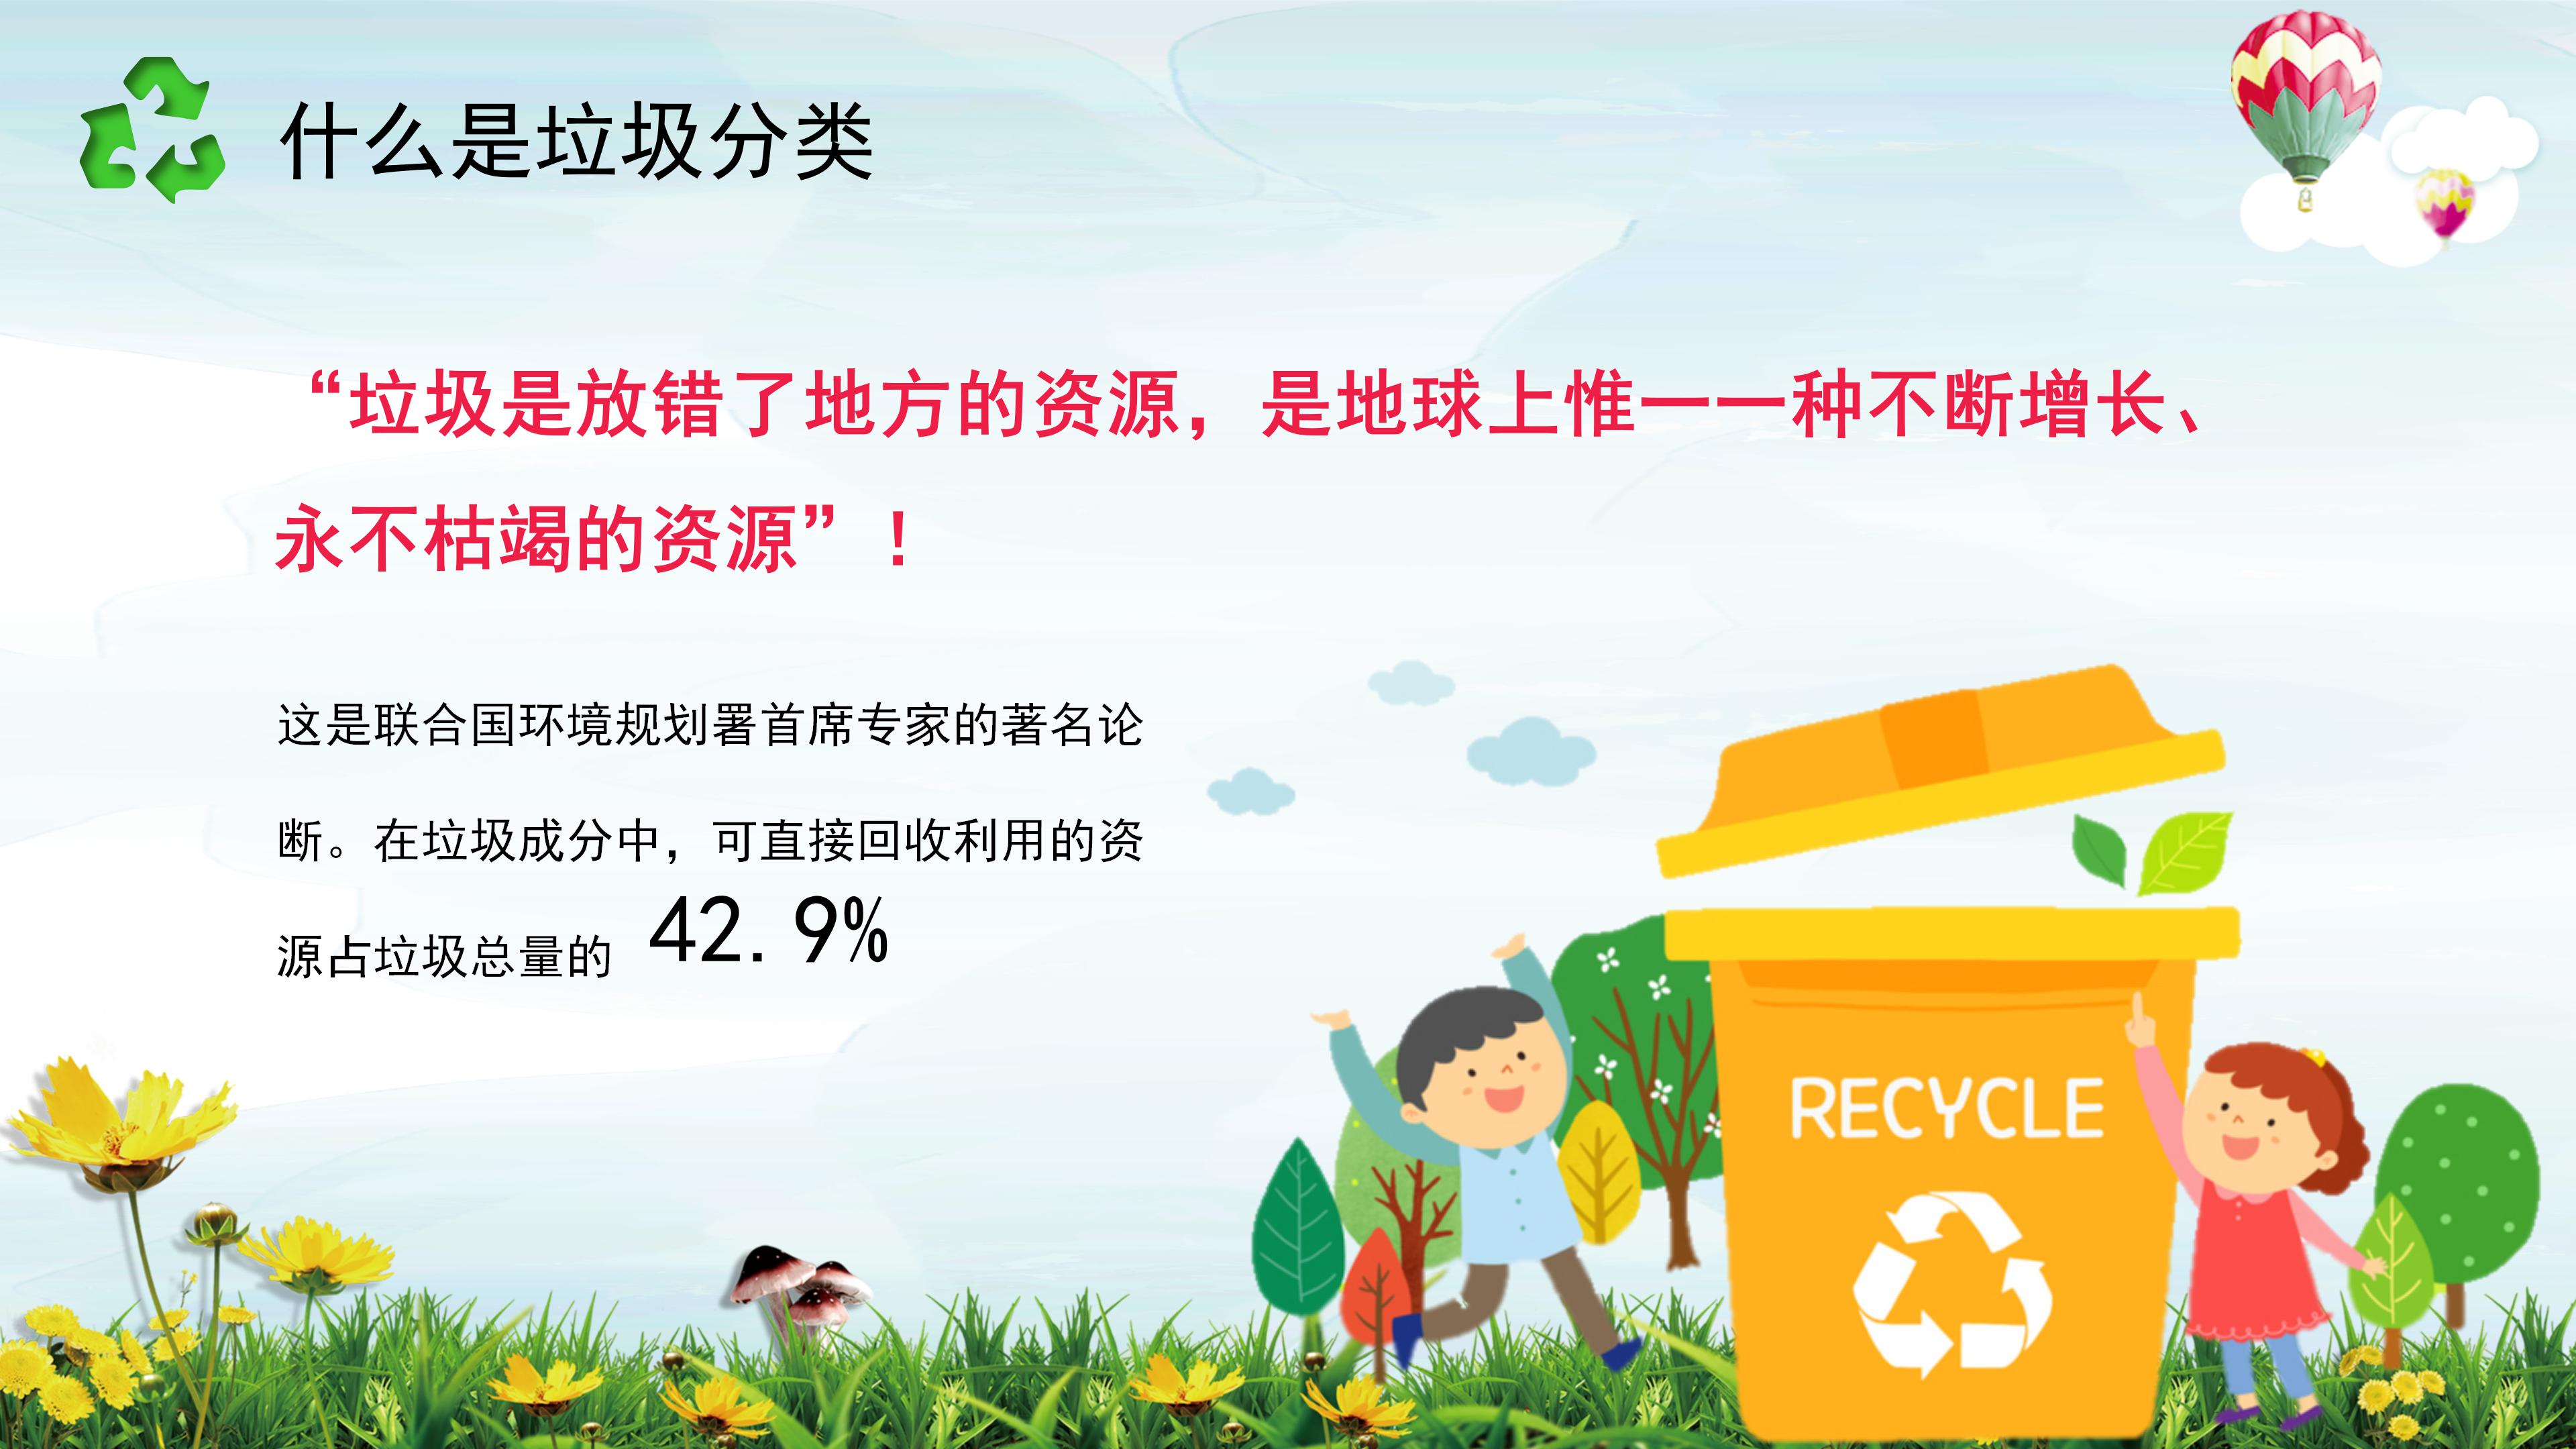 节能减排垃圾回收主题活动宣传ppt模板